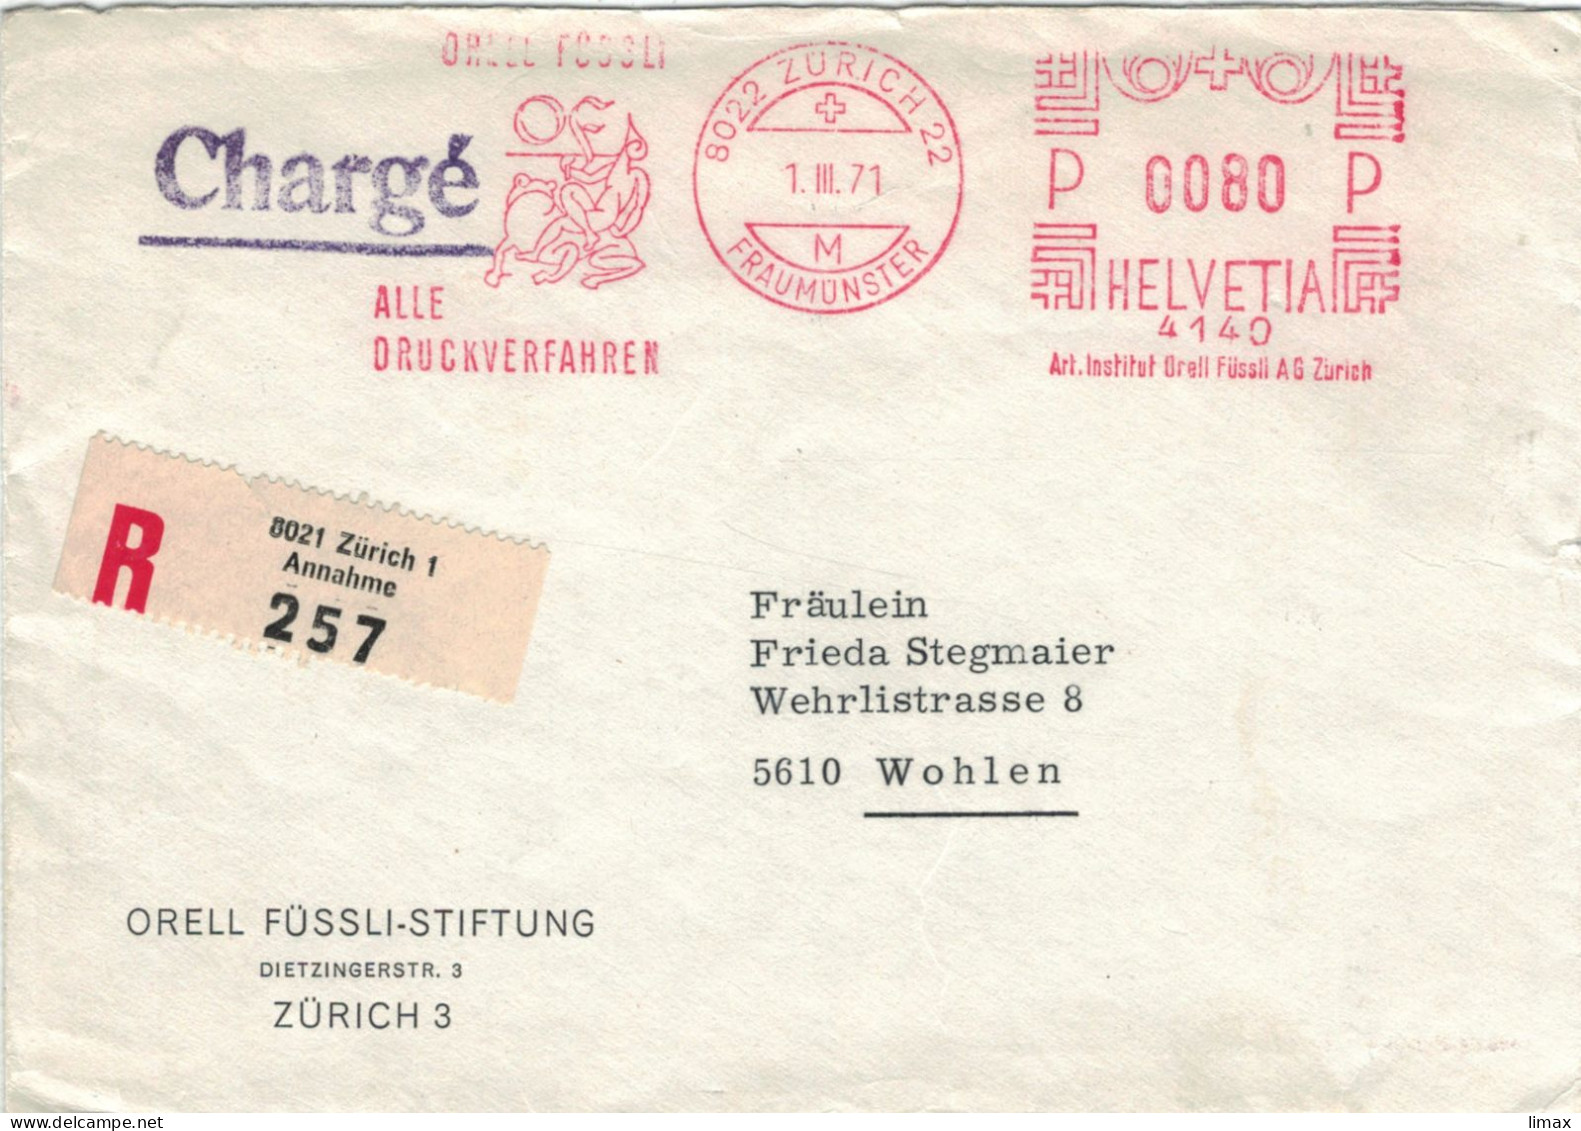 Orell Füssli Alle Druckverfahren 8022 Zürich Fraumünster 1971 No. 4140 - Frosch - Vgl. Froschauersche Druckerei - Frankeermachinen